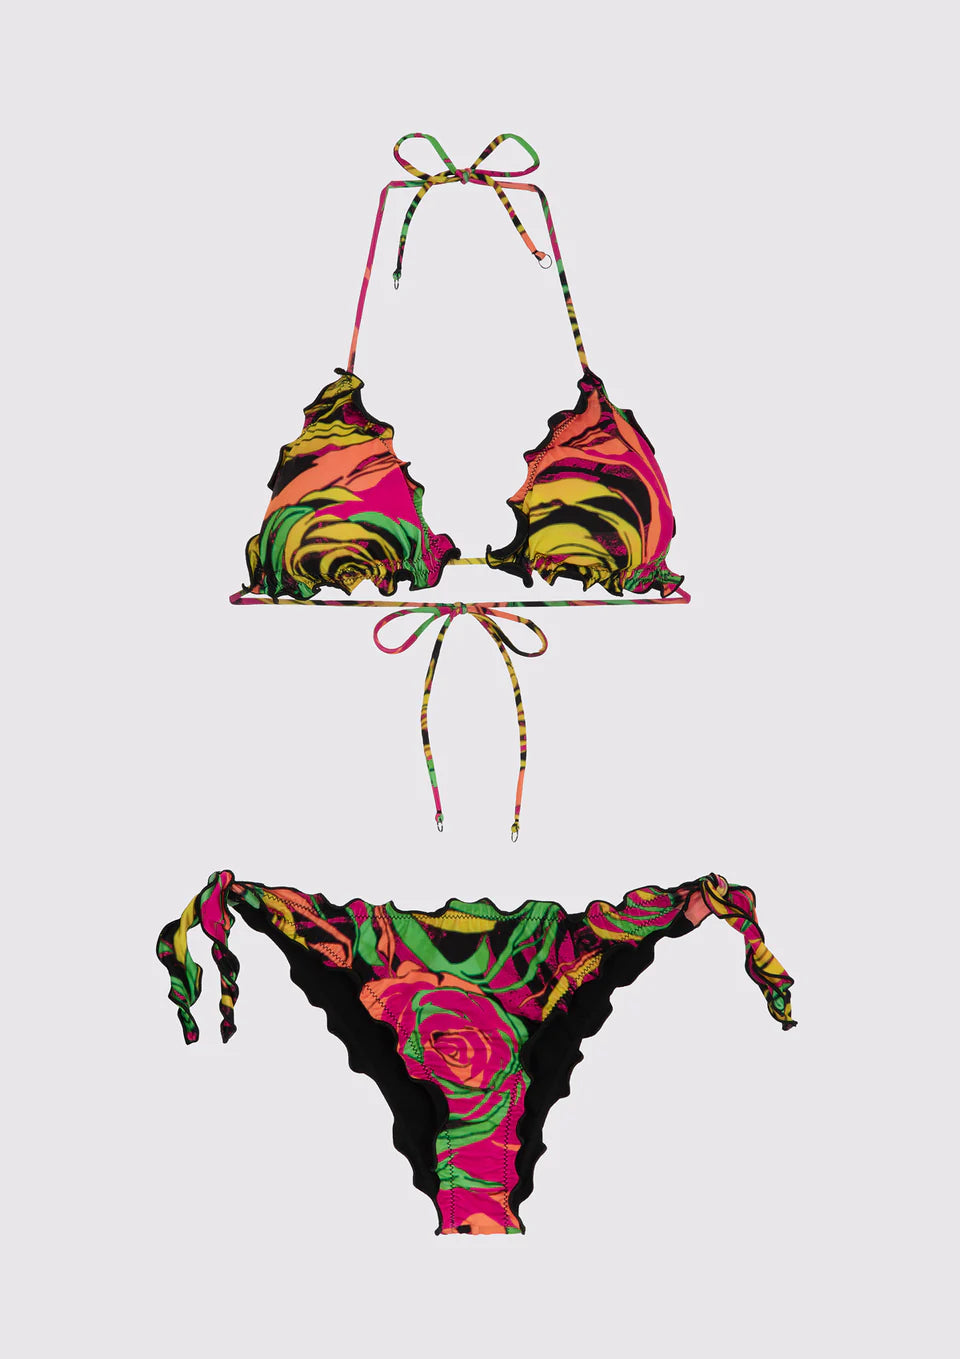 Costume bikini triangolo e slip nodi brasiliano